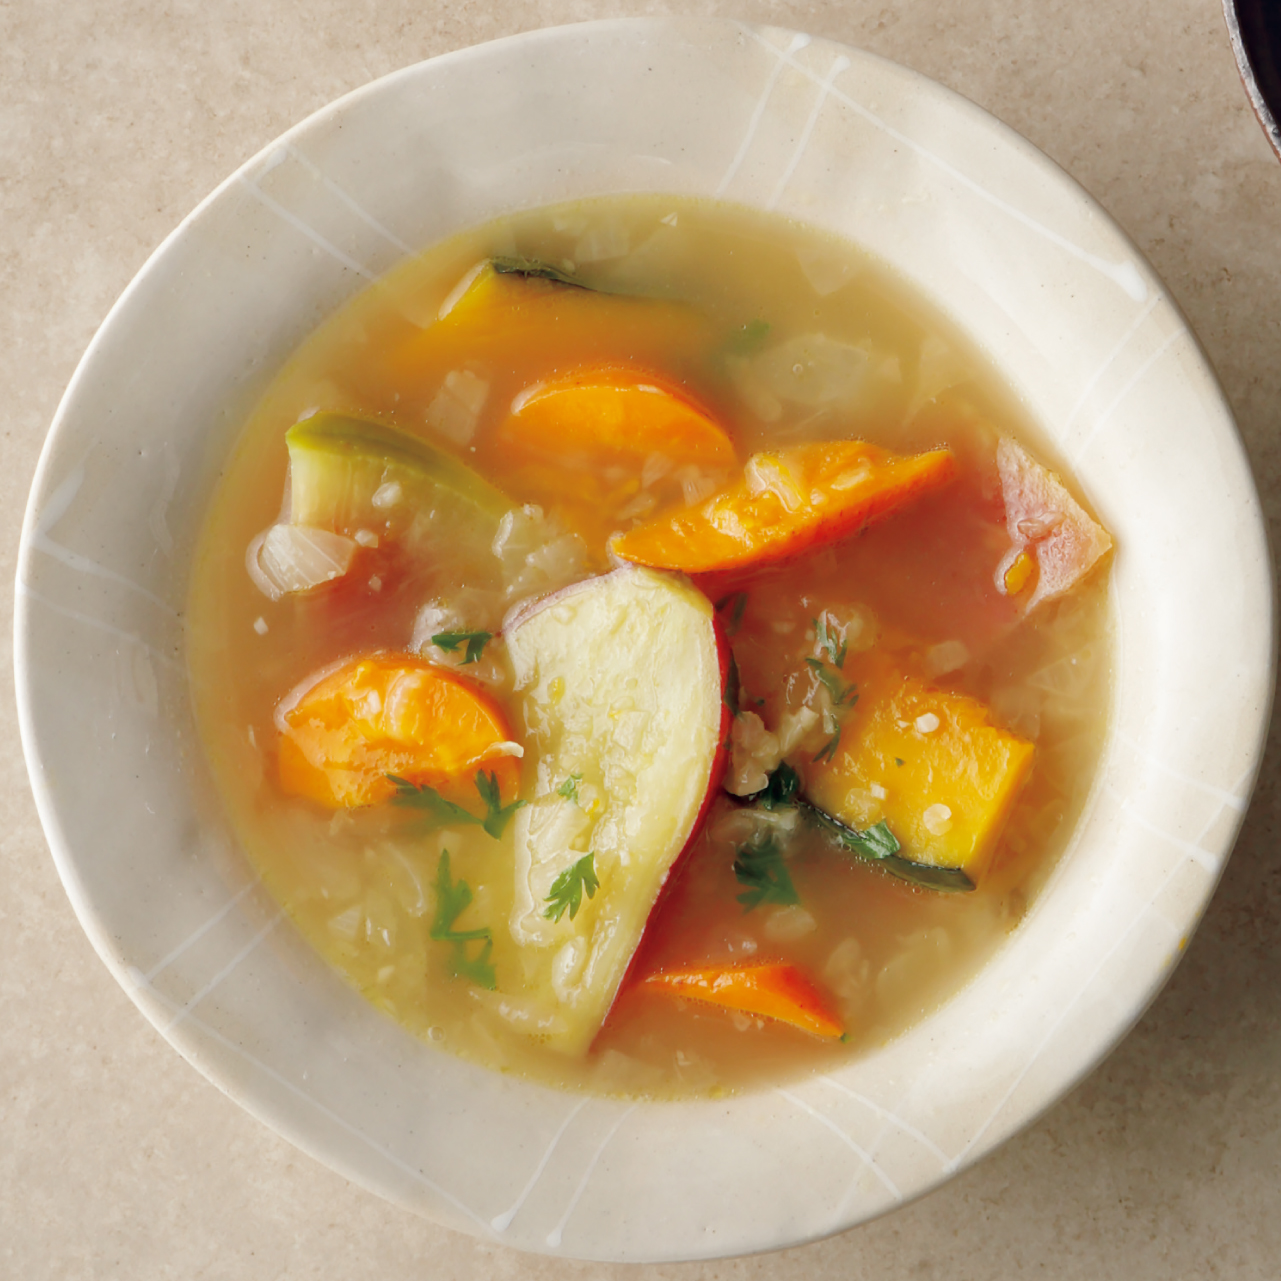 食物繊維をしっかりととれる、根菜のスープ